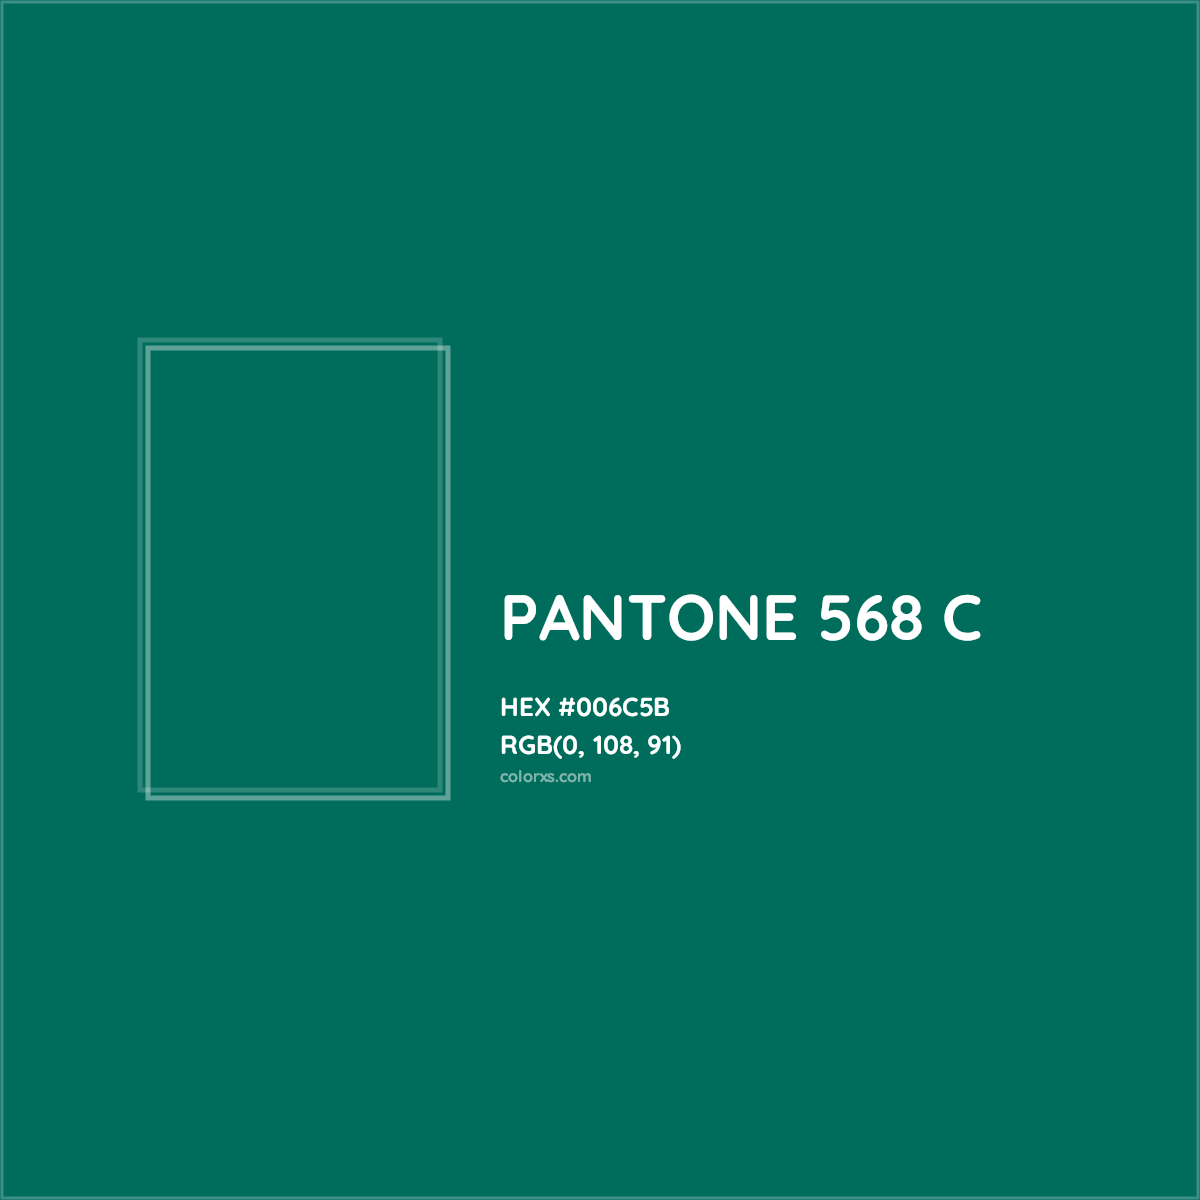 HEX #006C5B PANTONE 568 C CMS Pantone PMS - Color Code